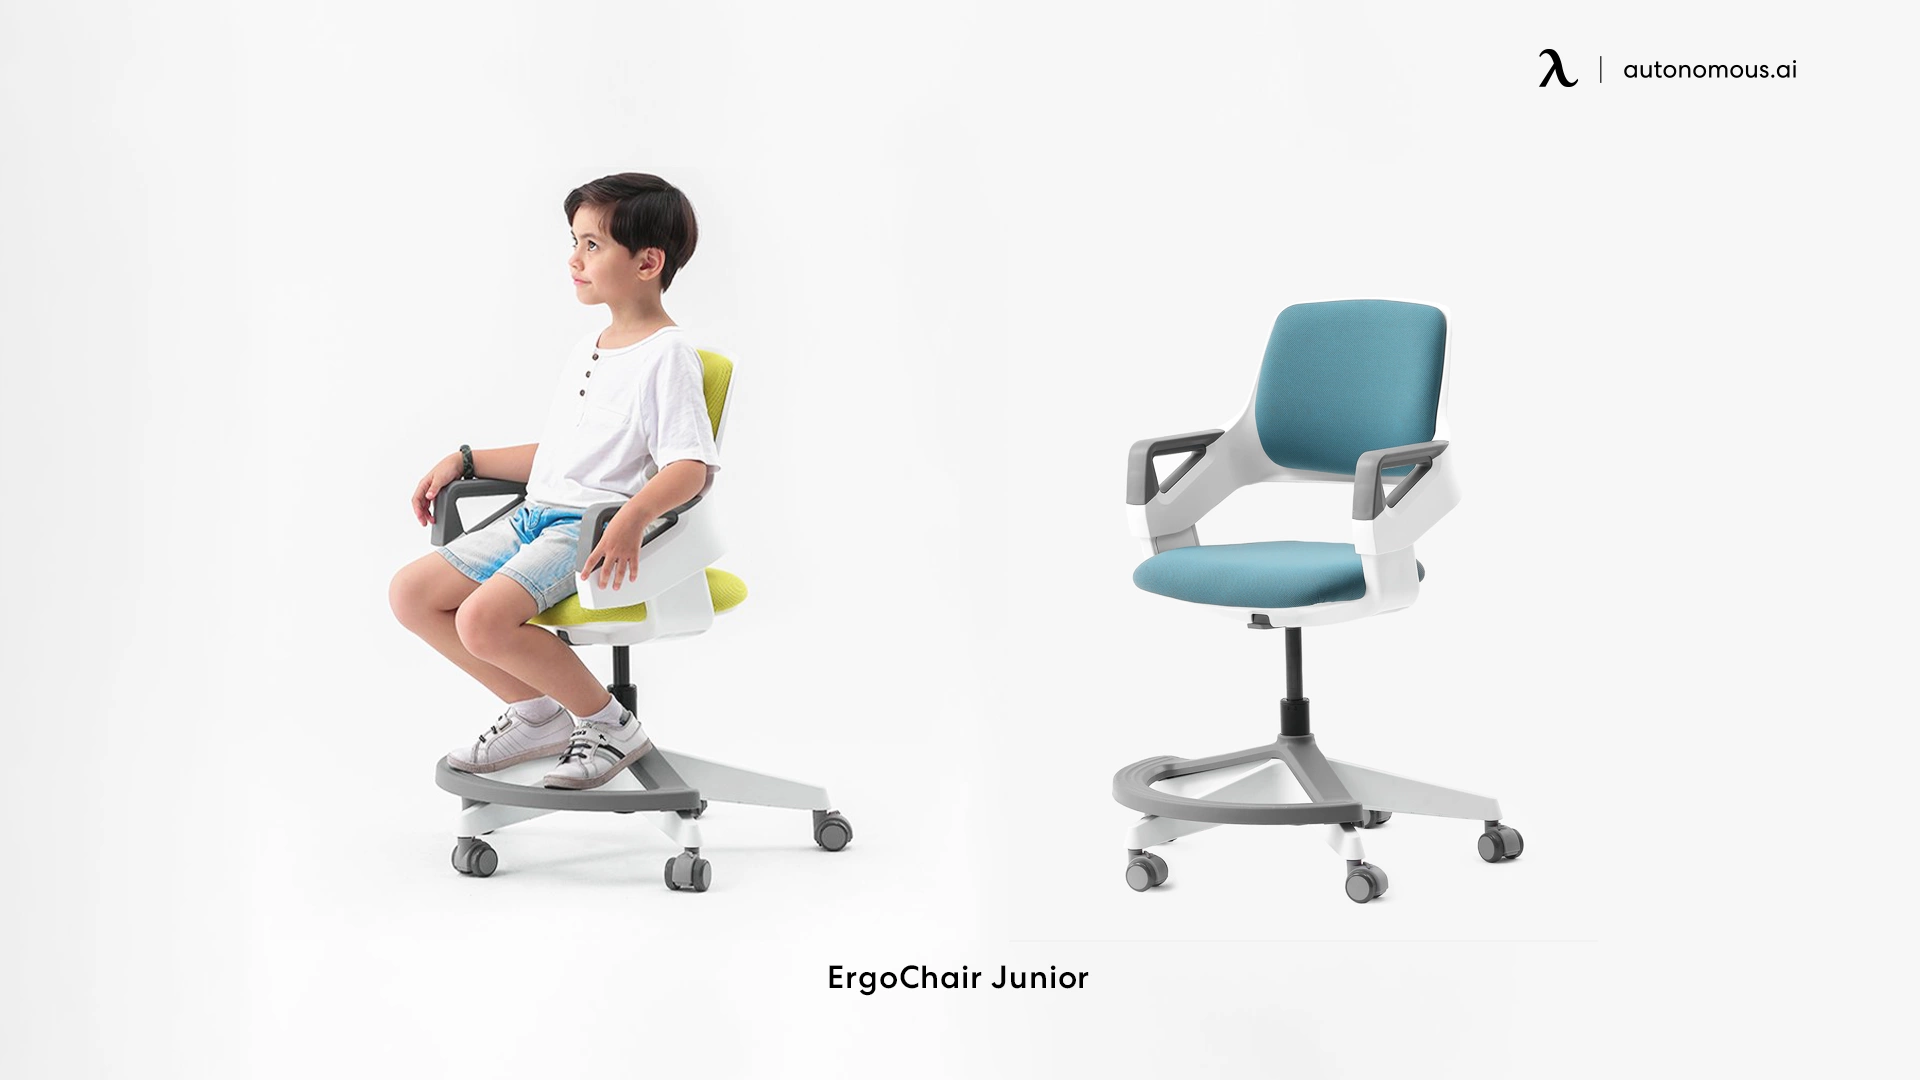 ErgoChair Junior modern comfort chair